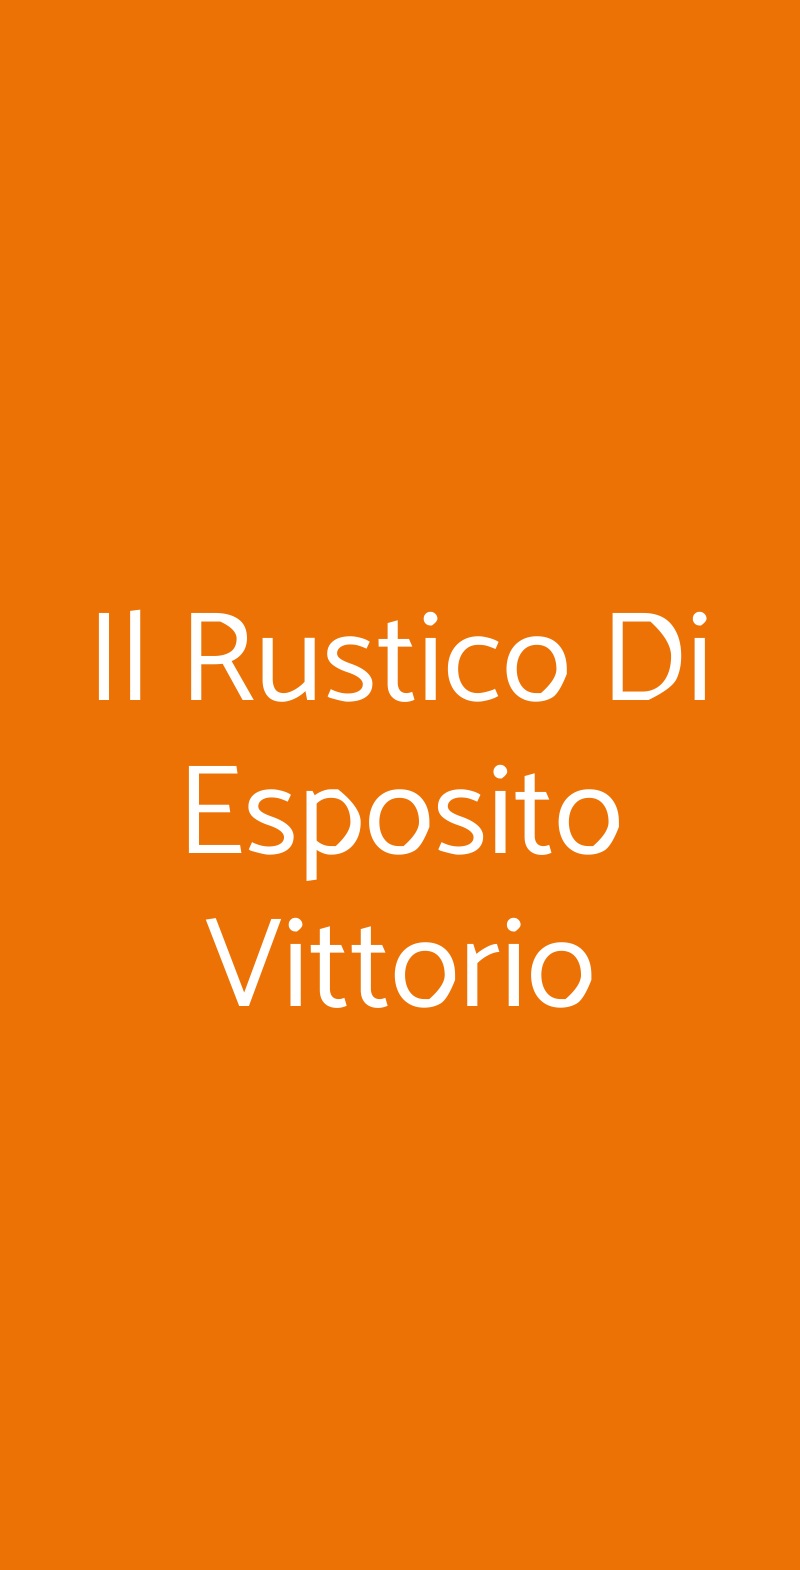 Il Rustico Di Esposito Vittorio Chieri menù 1 pagina